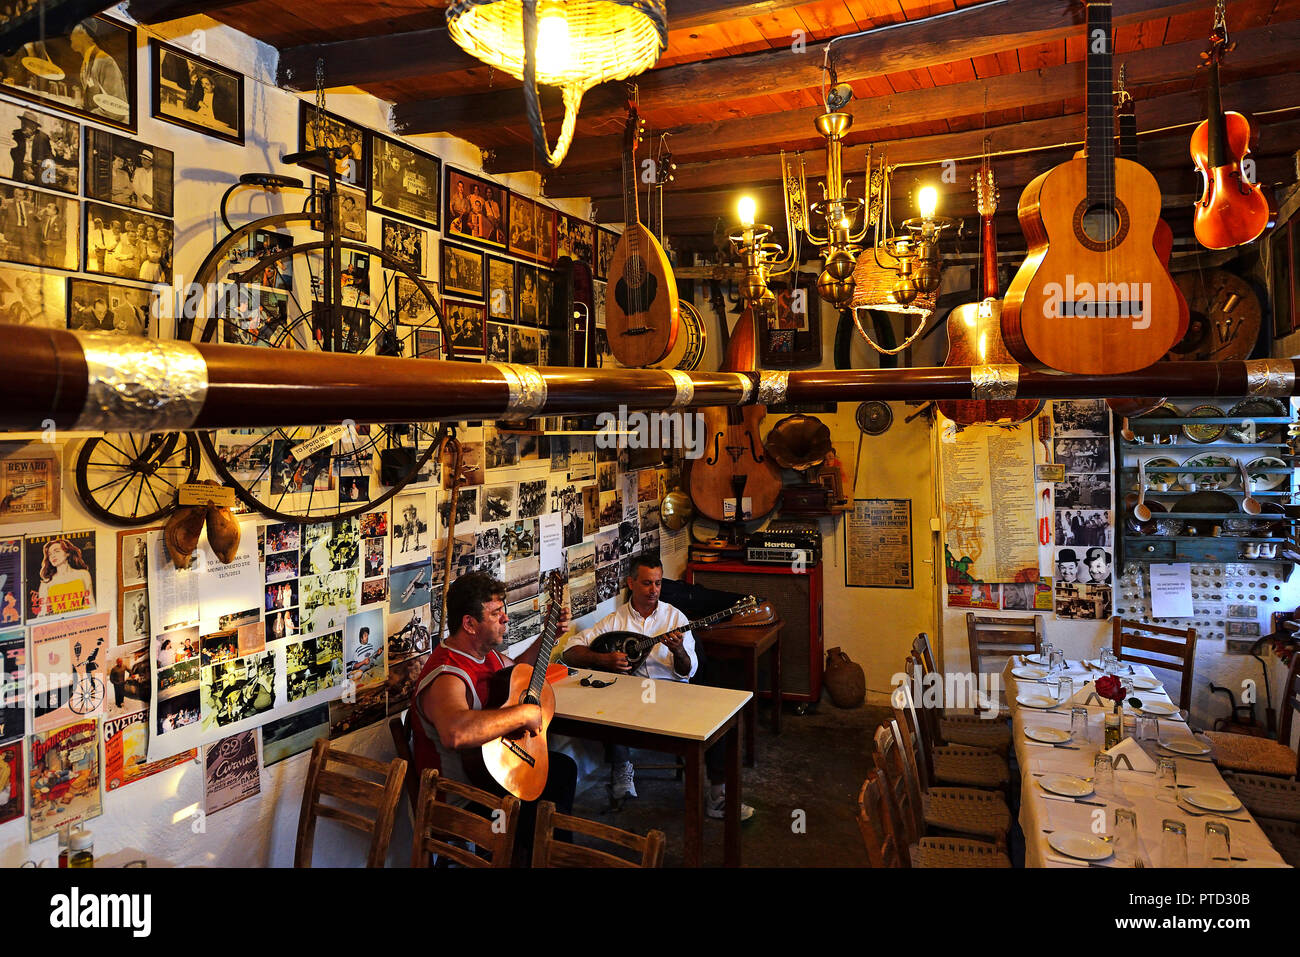 Zwei einheimische Musik spielen, Griechen spielen Bouzouki und Gitarre in der Taverne, Kritsa, Kreta, Griechenland Stockfoto